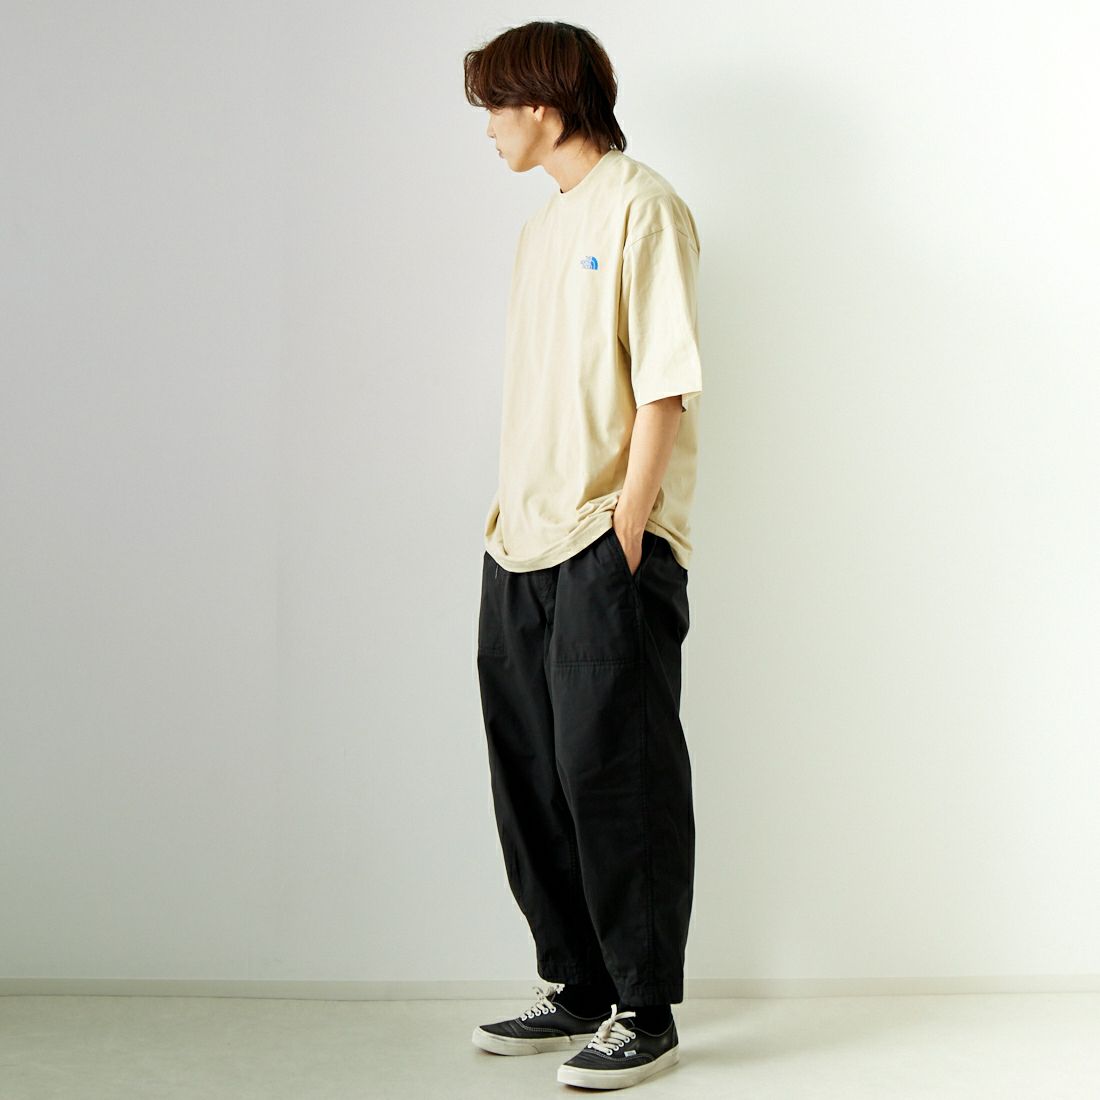 THE NORTH FACE [ザ ノースフェイス] ショートスリーブ シンプルカラースキームTシャツ [NT32434] GL &&モデル身長：179cm 着用サイズ：XL&&